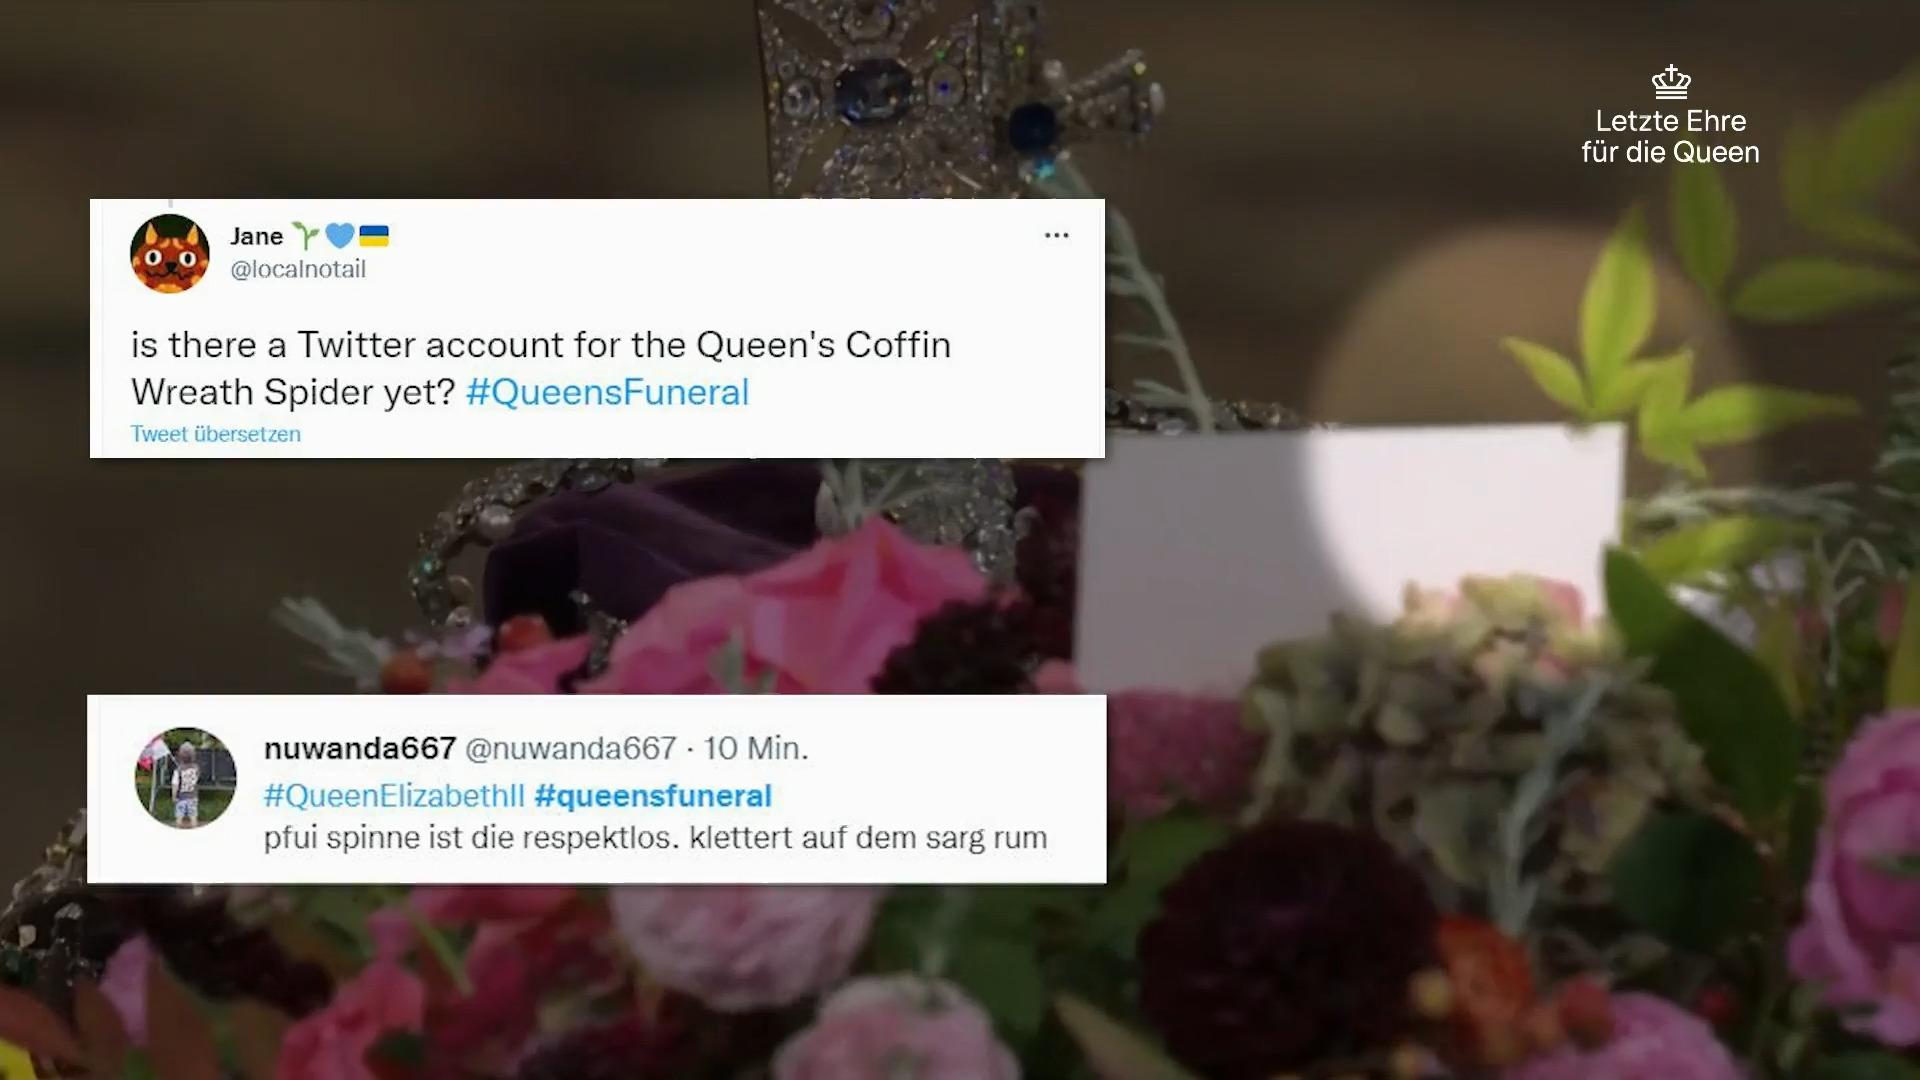 Ungebetener Gast: Grüne Spinne am Sargschmuck Wie Twitter-User auf die Queen-Trauerfeier schauen